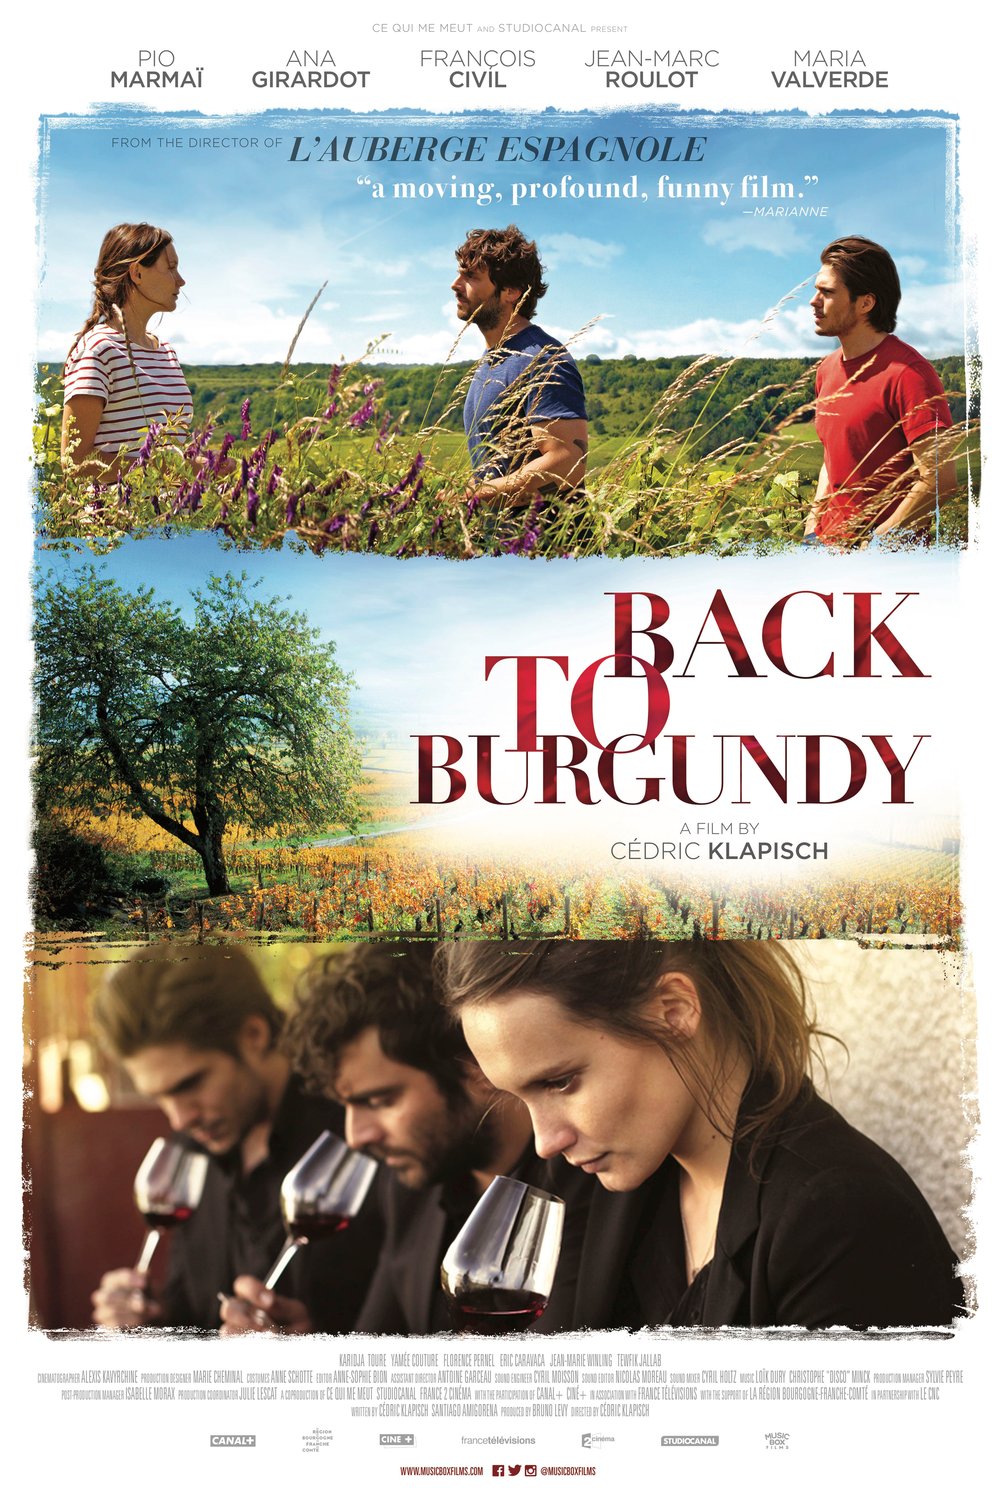 L'affiche du film Back to Burgundy